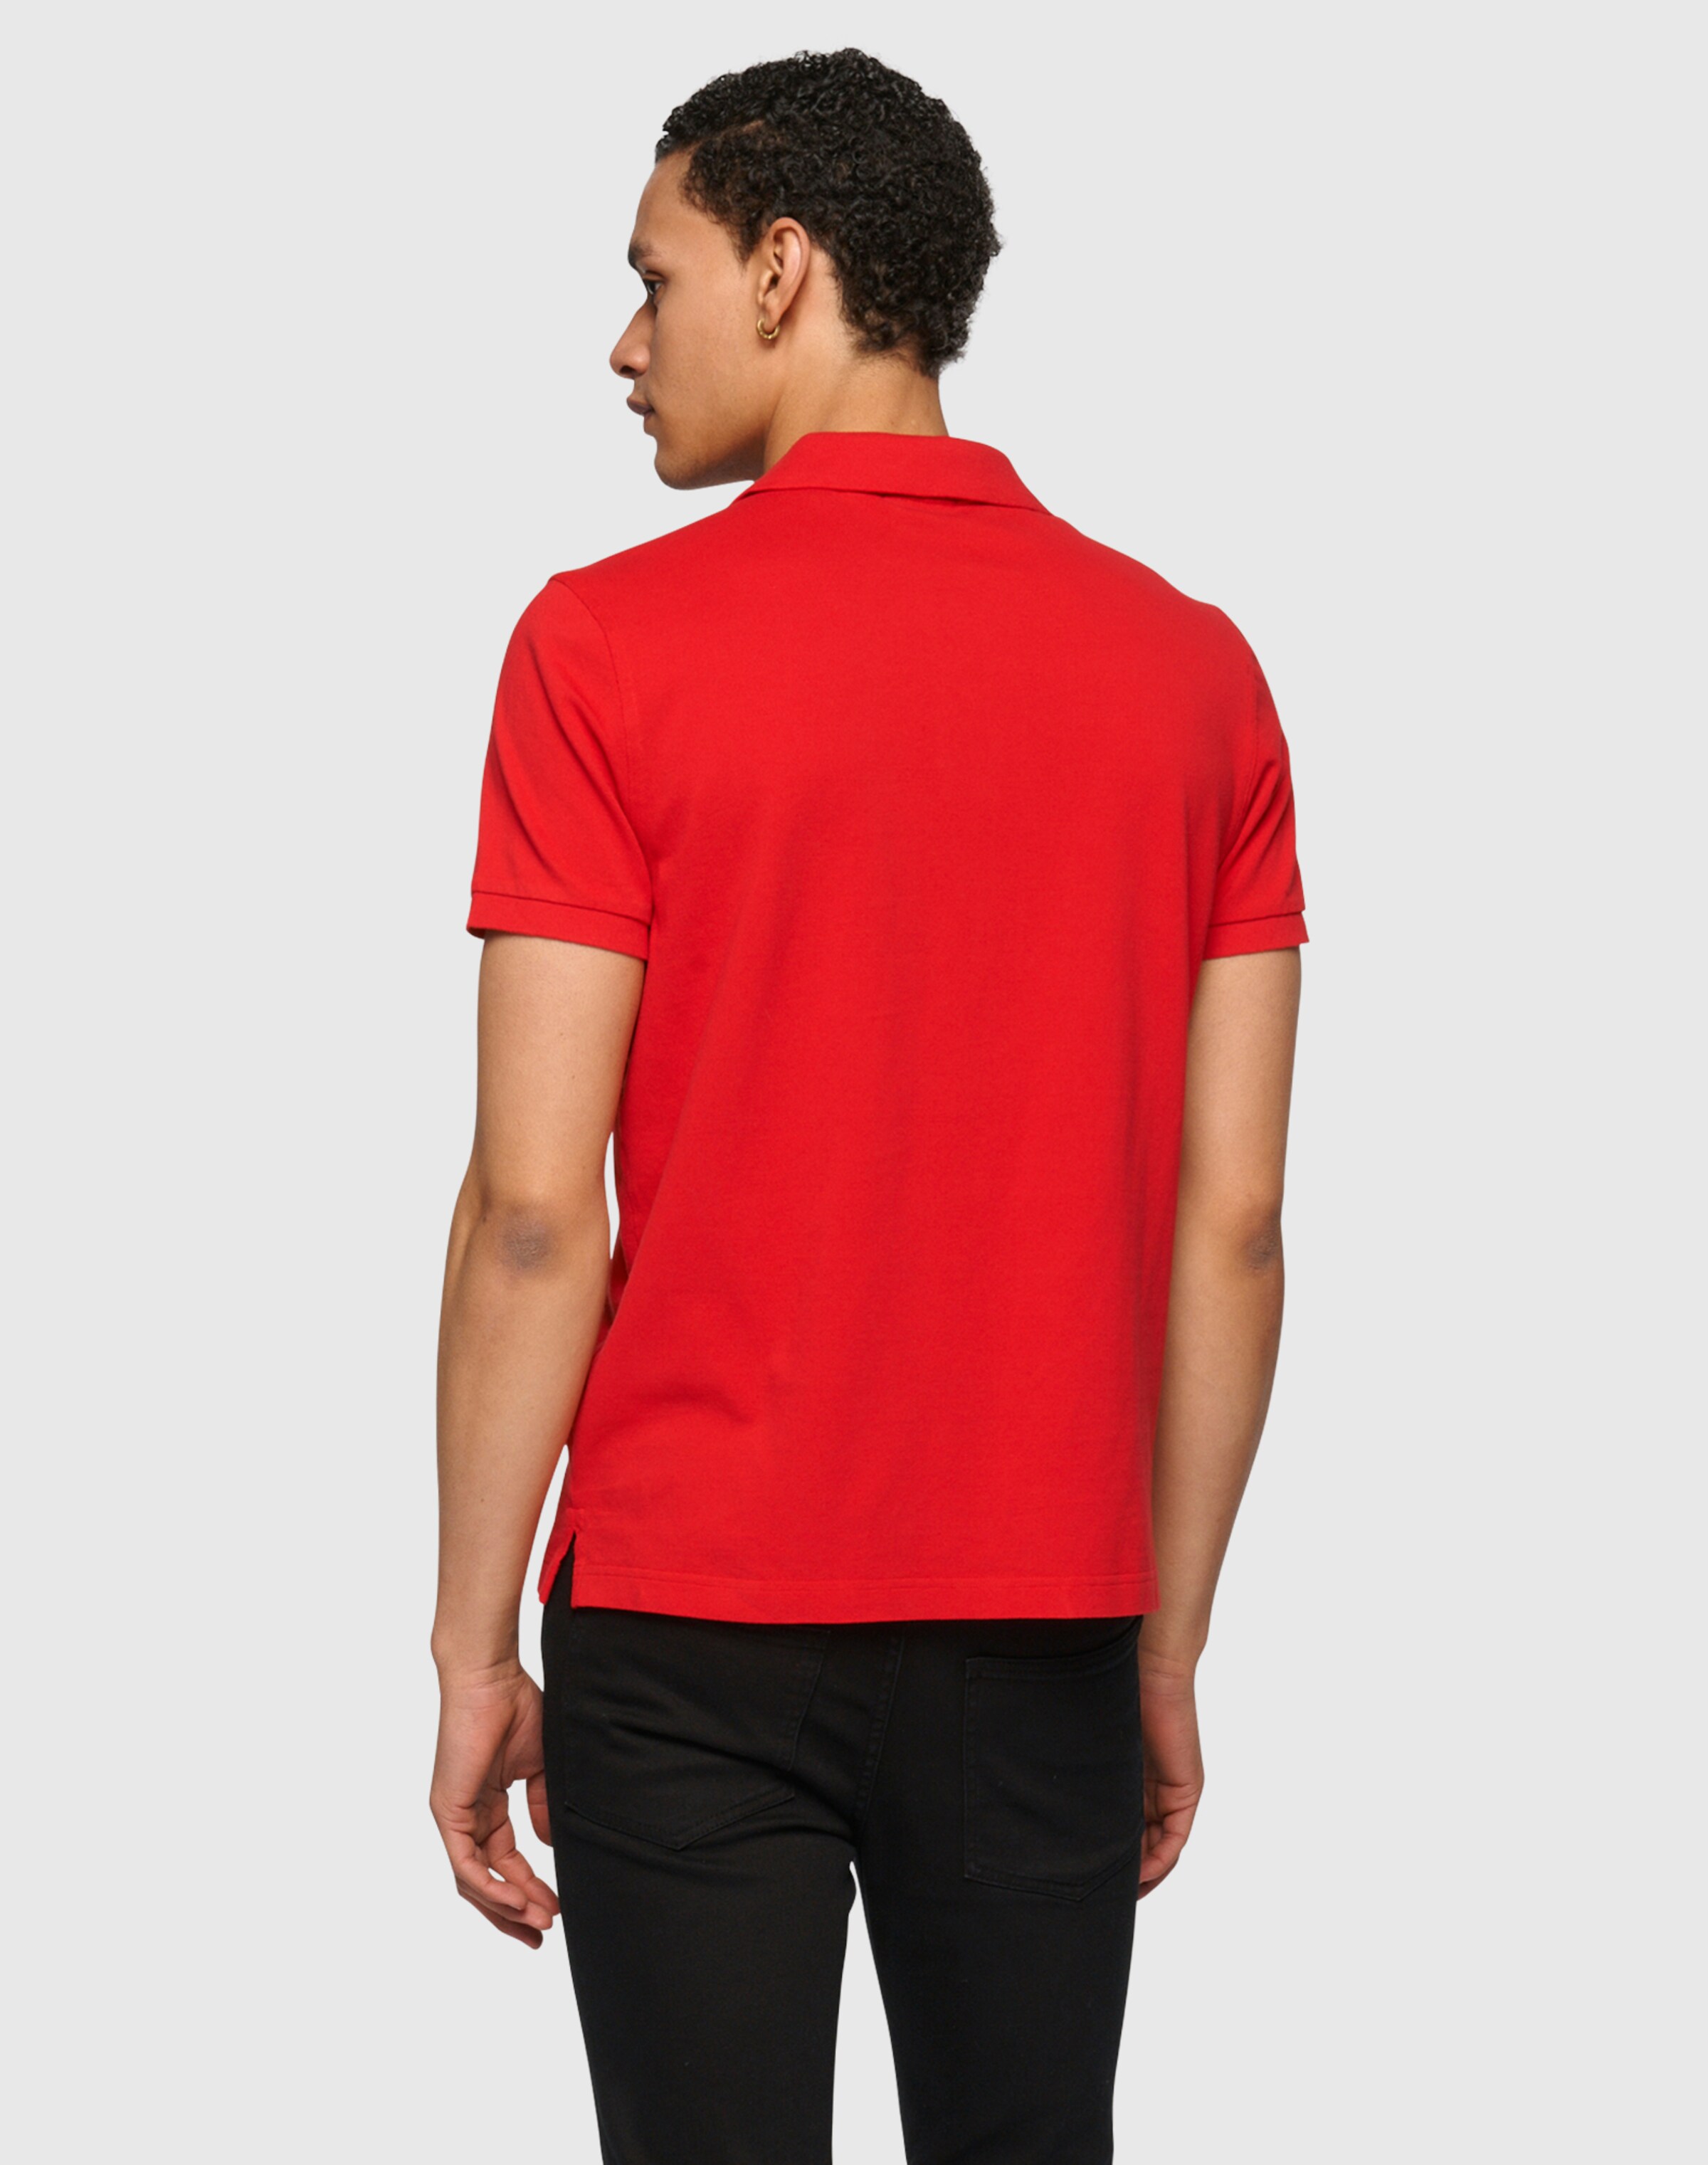 Männer Shirts GANT Poloshirt in Rot - HI63139